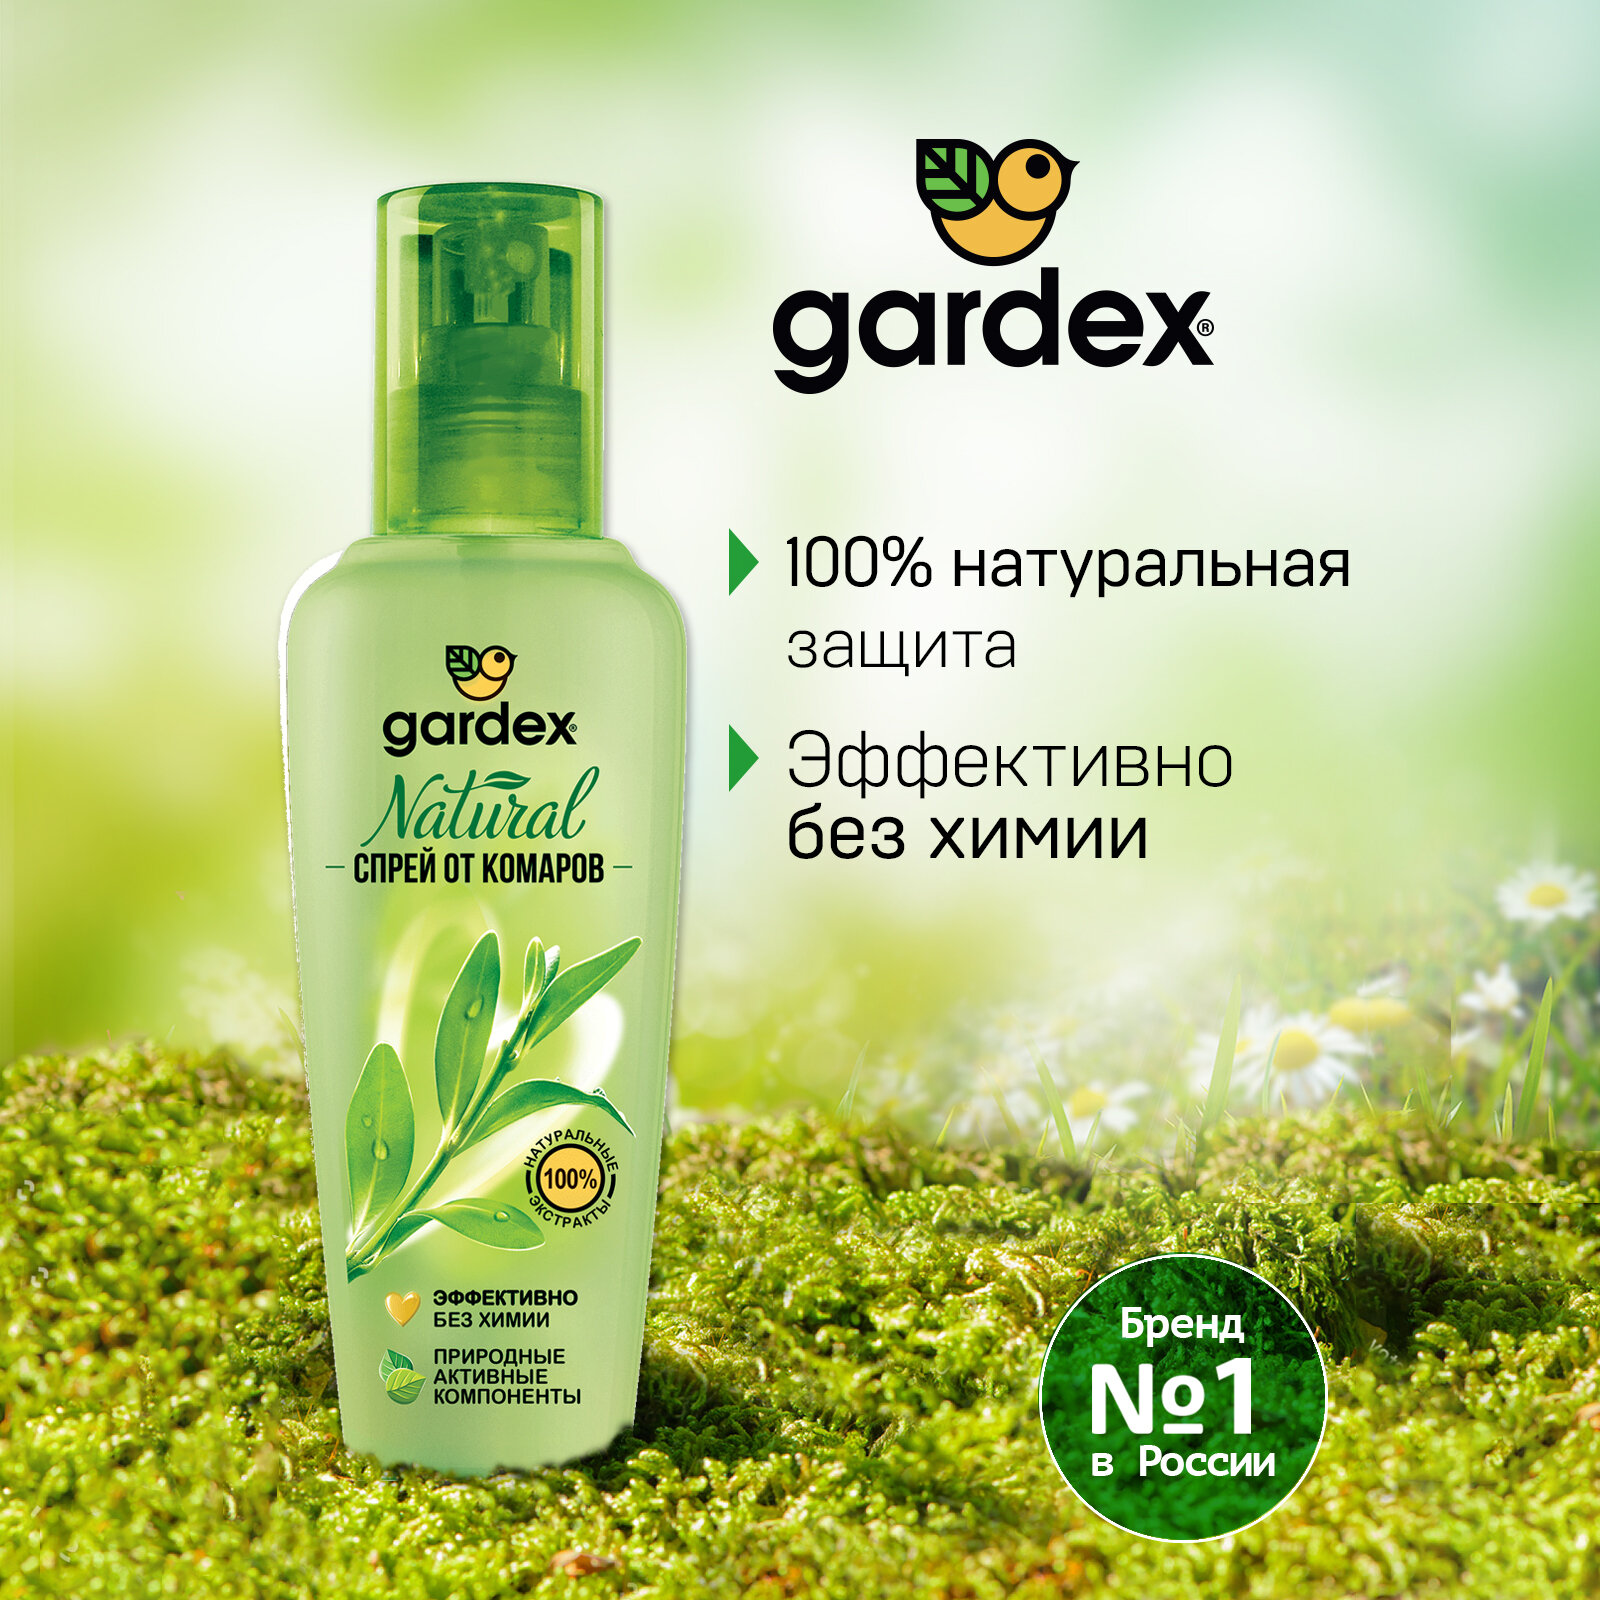 Спрей Gardex Natural от комаров на натуральной основе